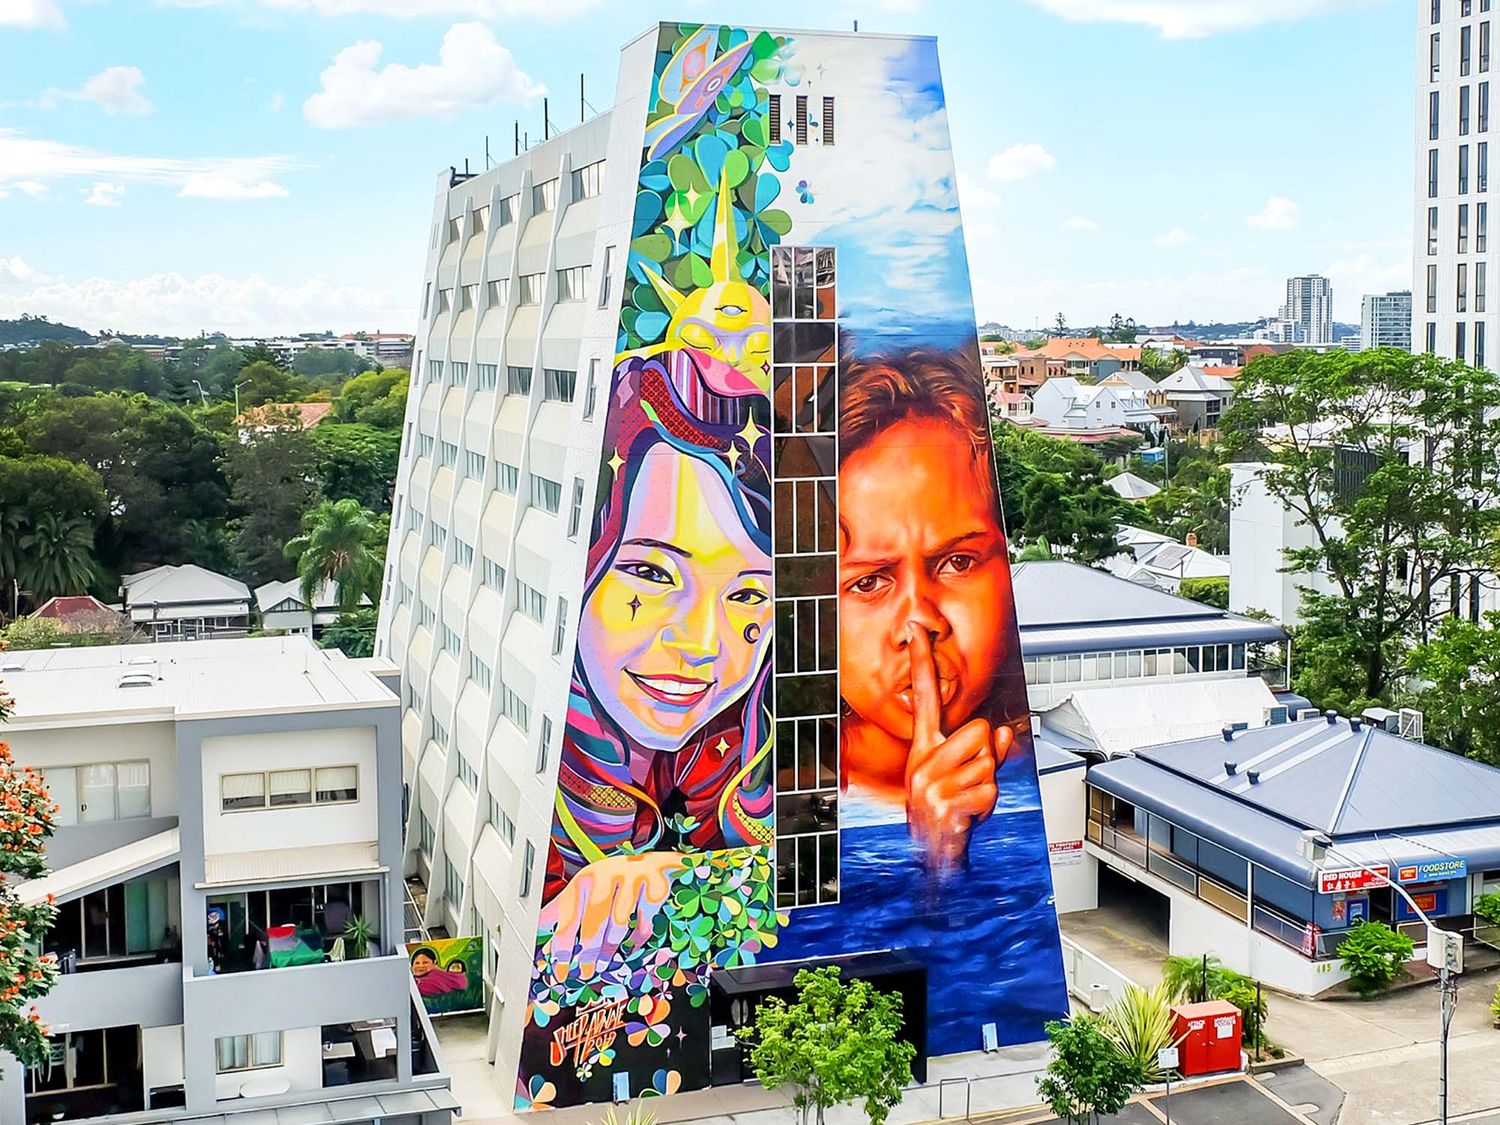 Depuis près de 10 ans, le Brisbane Street Art Festival transforme la ville avec des fresques murales et de nombreuses initiatives pour promouvoir les artistes émergents (©IES / @Sheep Shen + Matt Adnate).